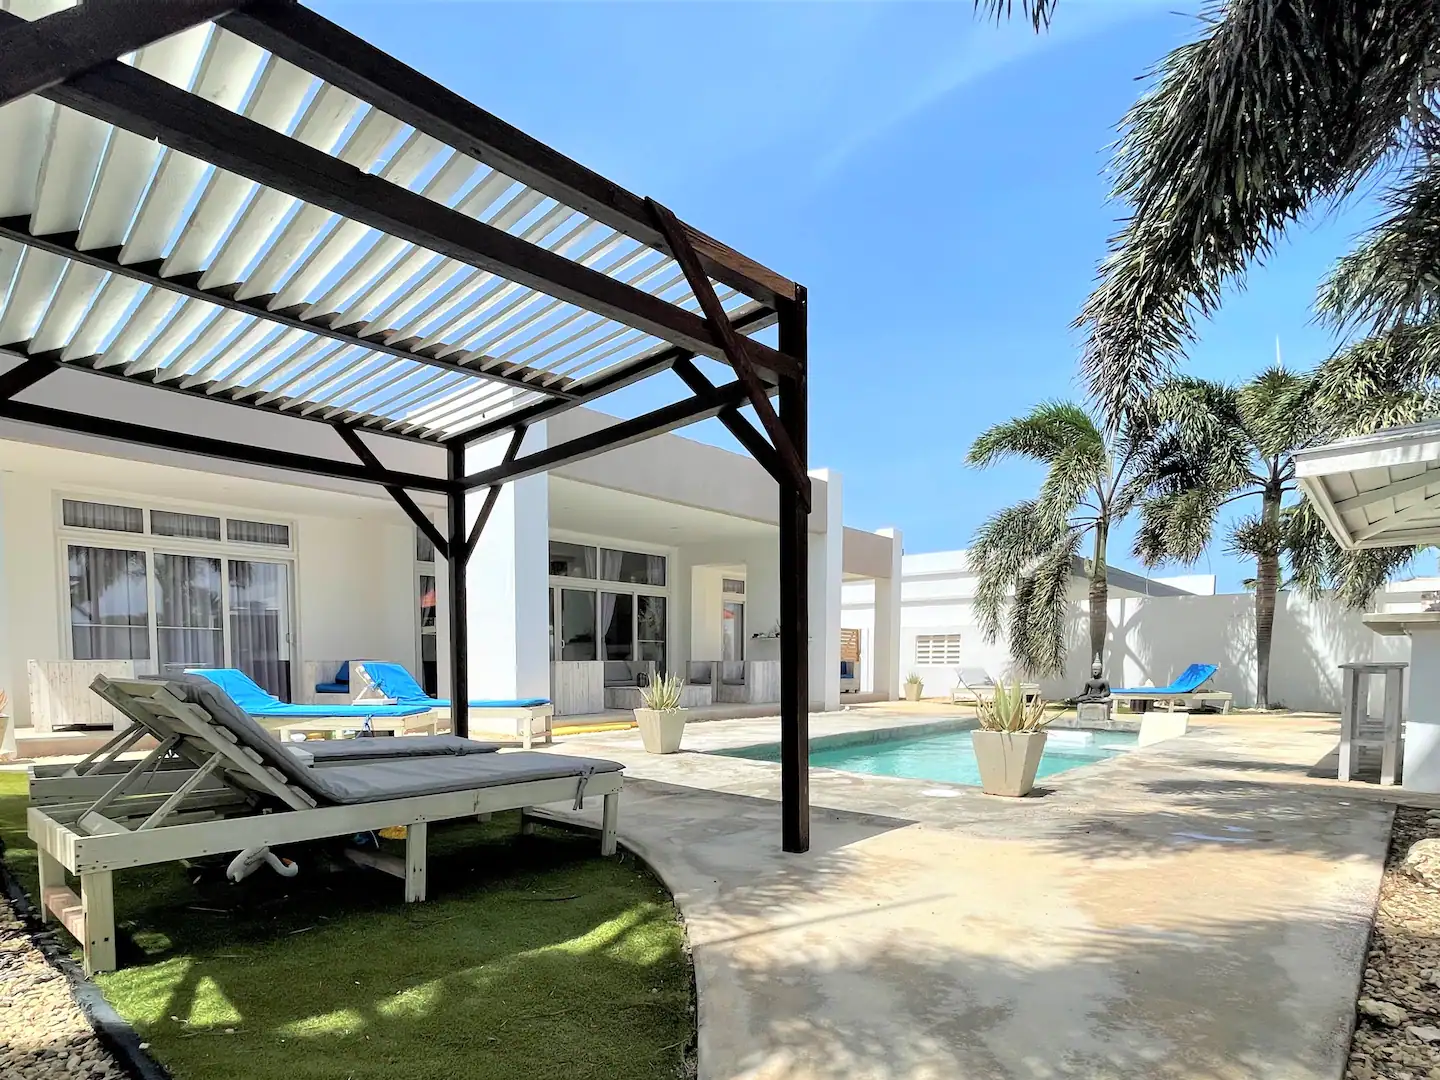 Zentasy Private 4-Bedroom Villa Close to Beach